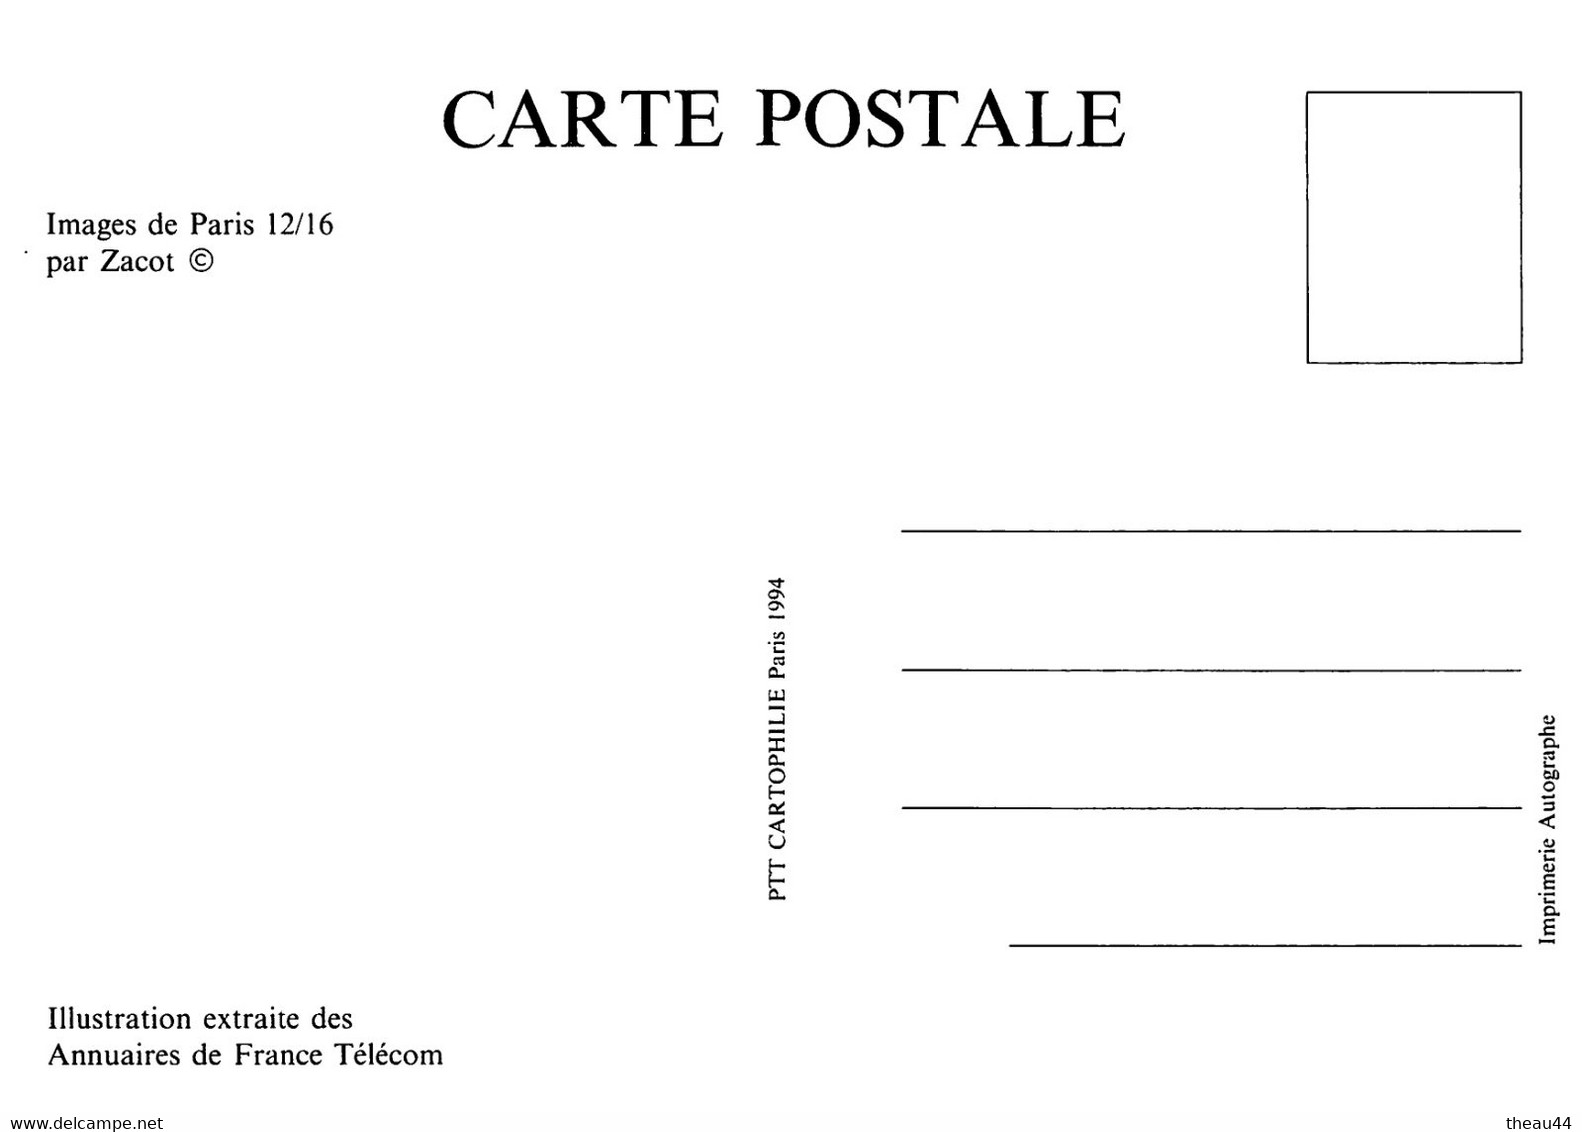 Lot 16 Cartes de l'Illustrateur " ZACOT " -Illustration extraite des Annuaires de "FRANCE-TELECOM" - " PTT Cartophilie "